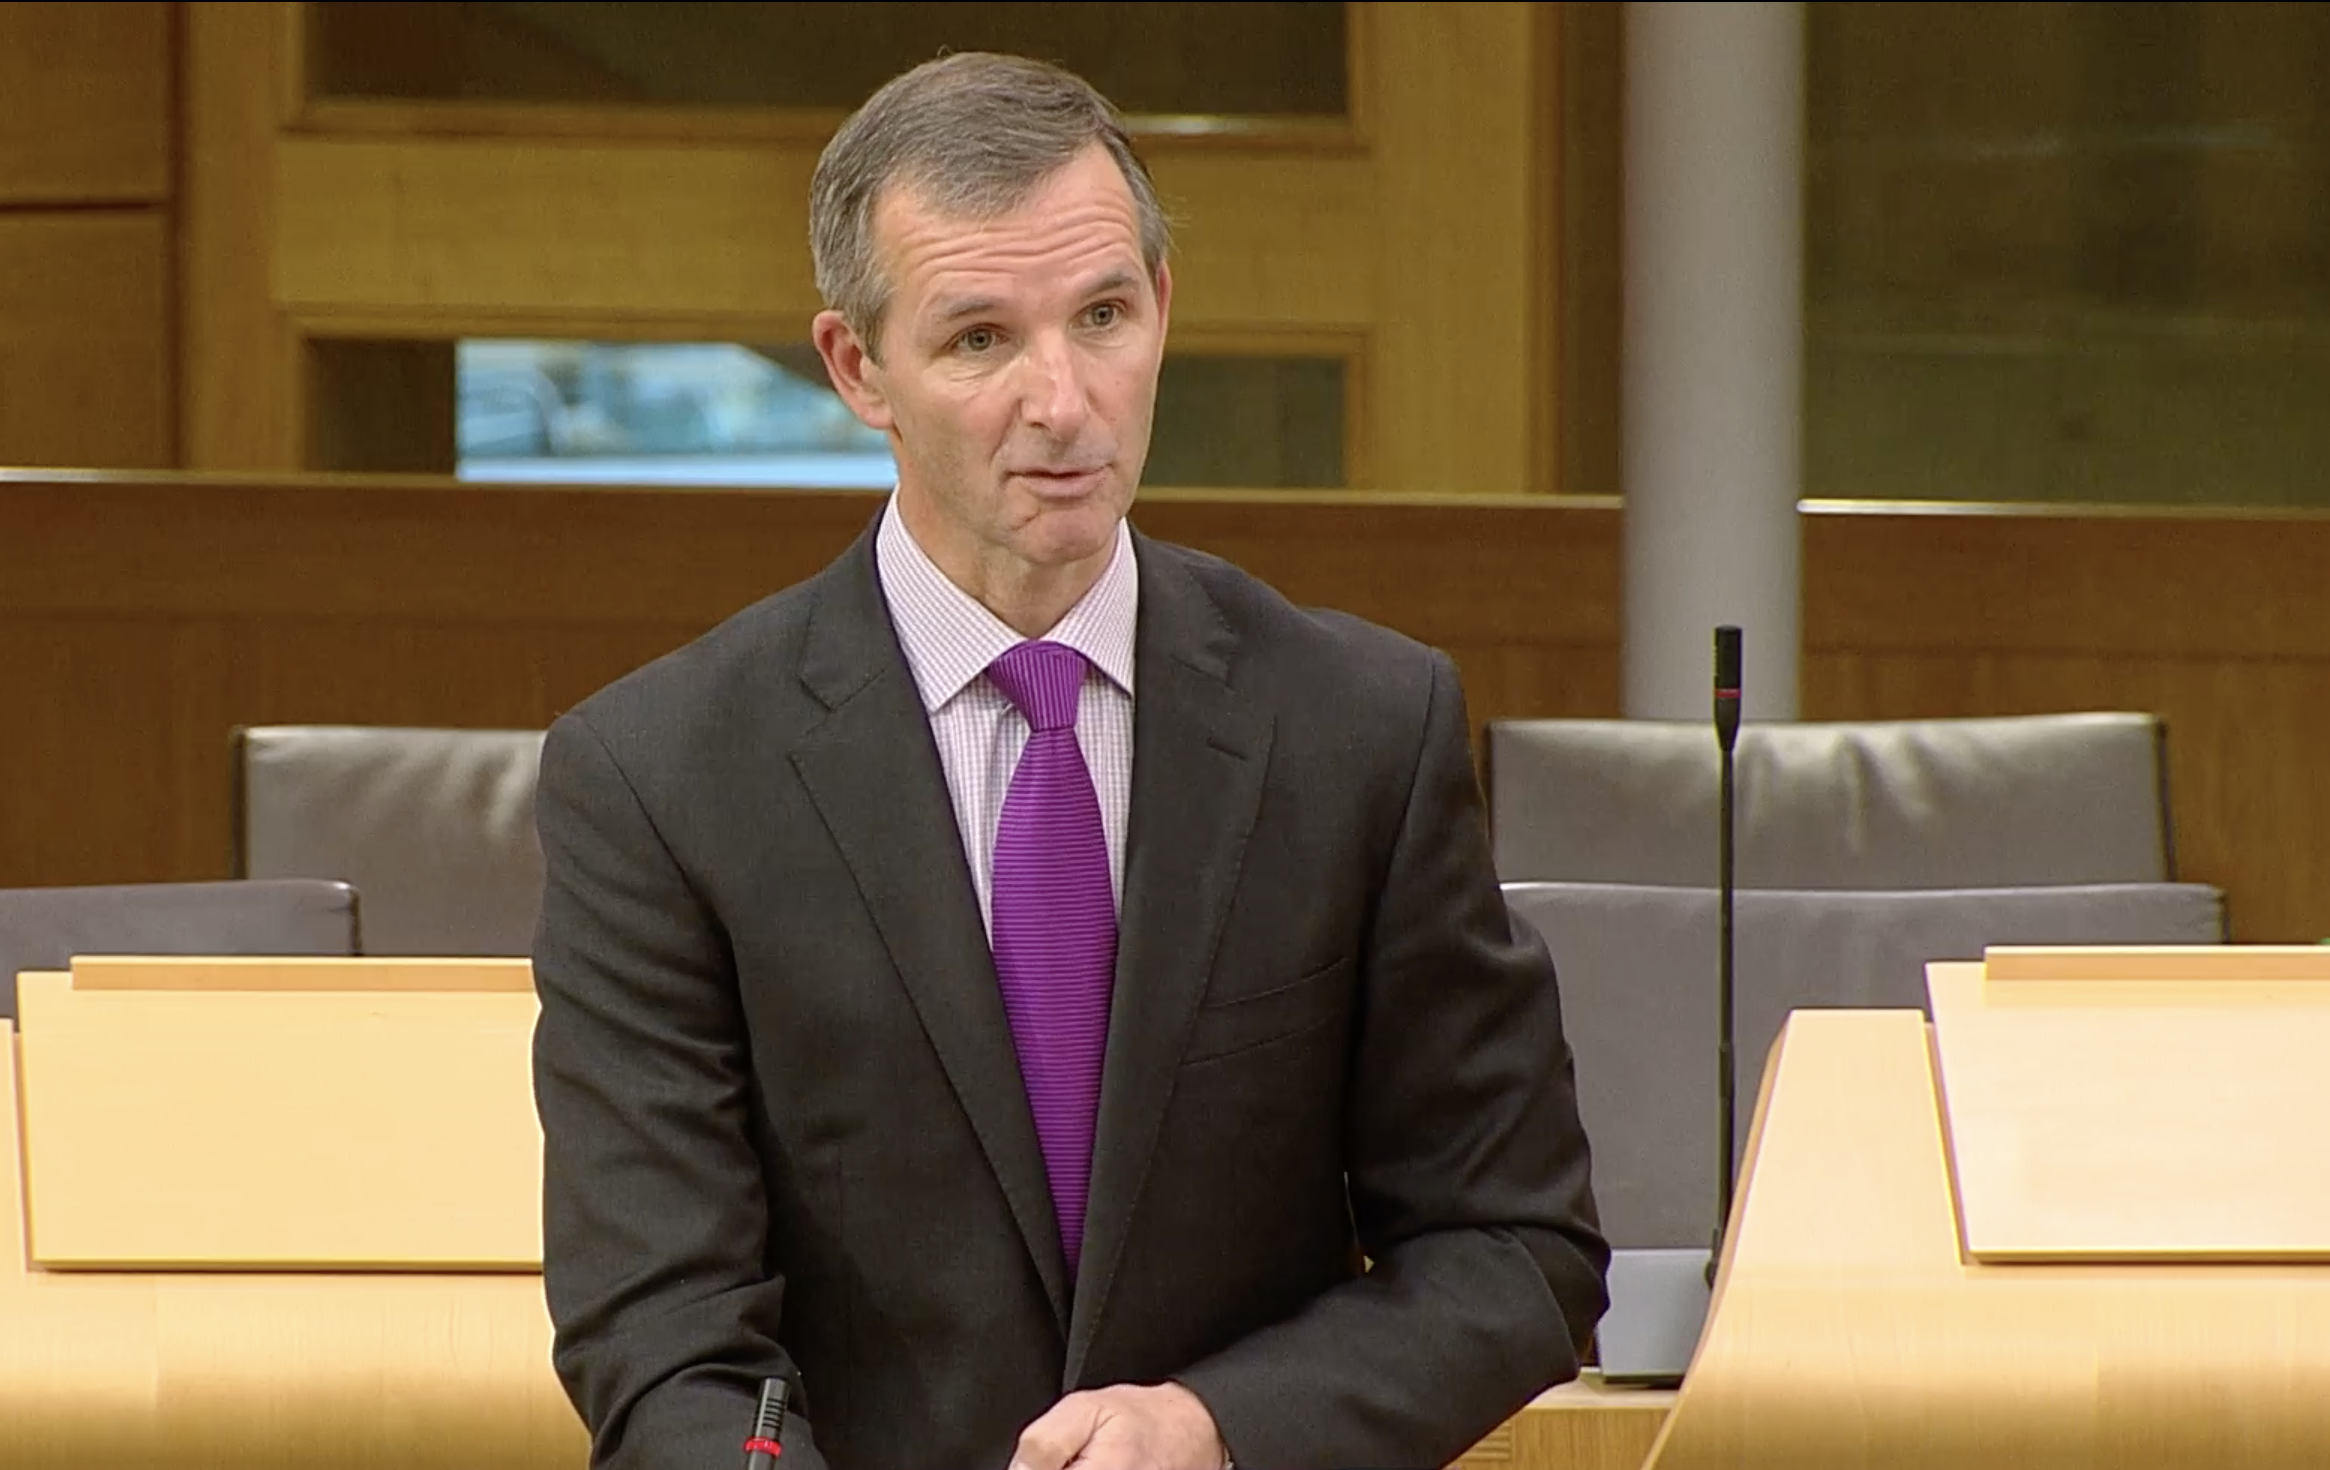 Liam McArthur speaking in parliament